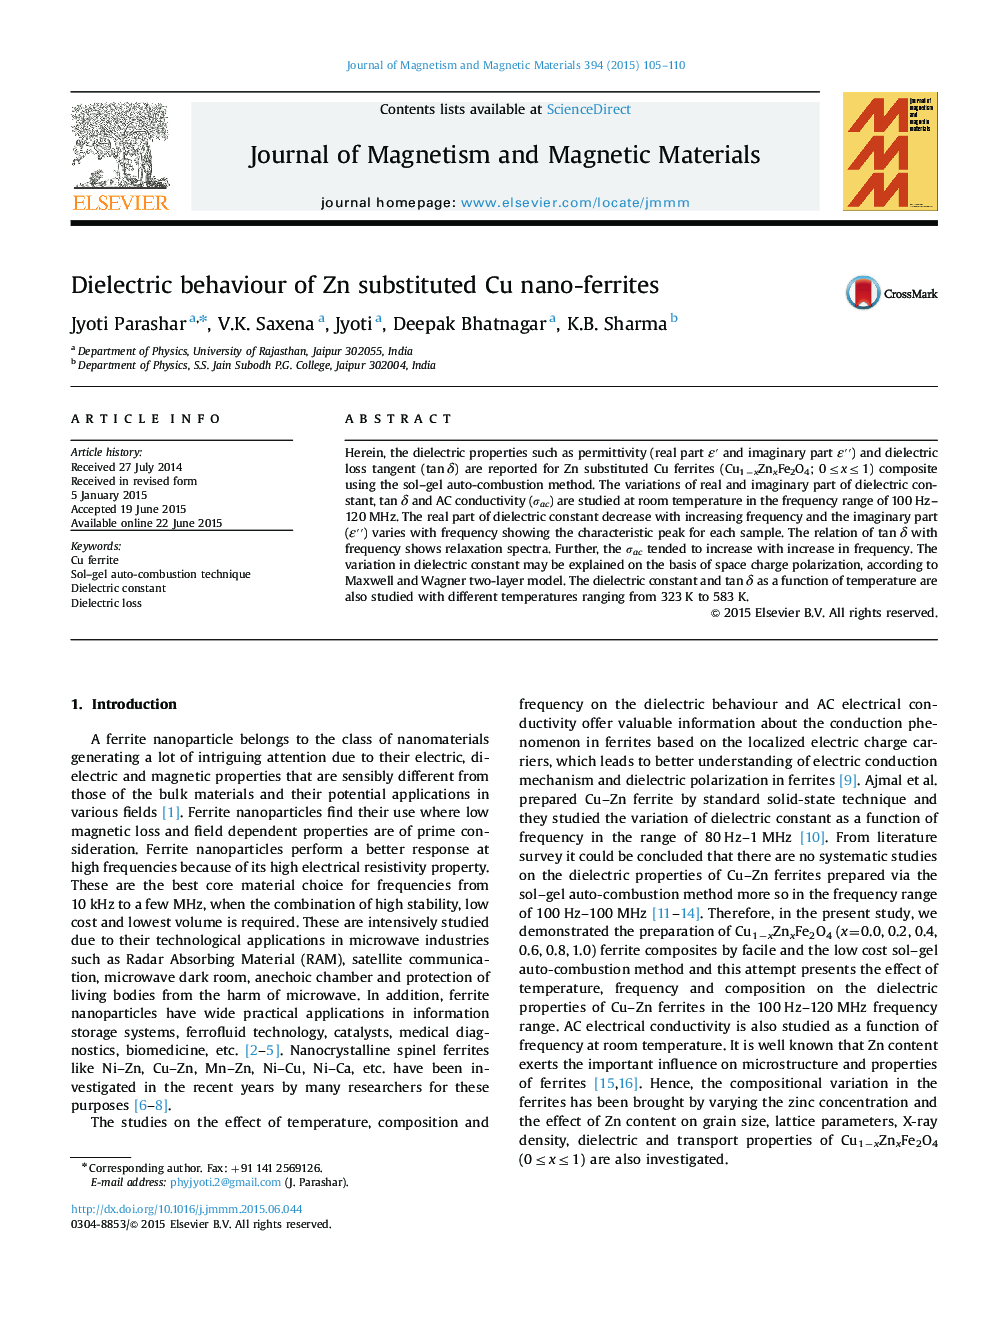 Dielectric behaviour of Zn substituted Cu nano-ferrites